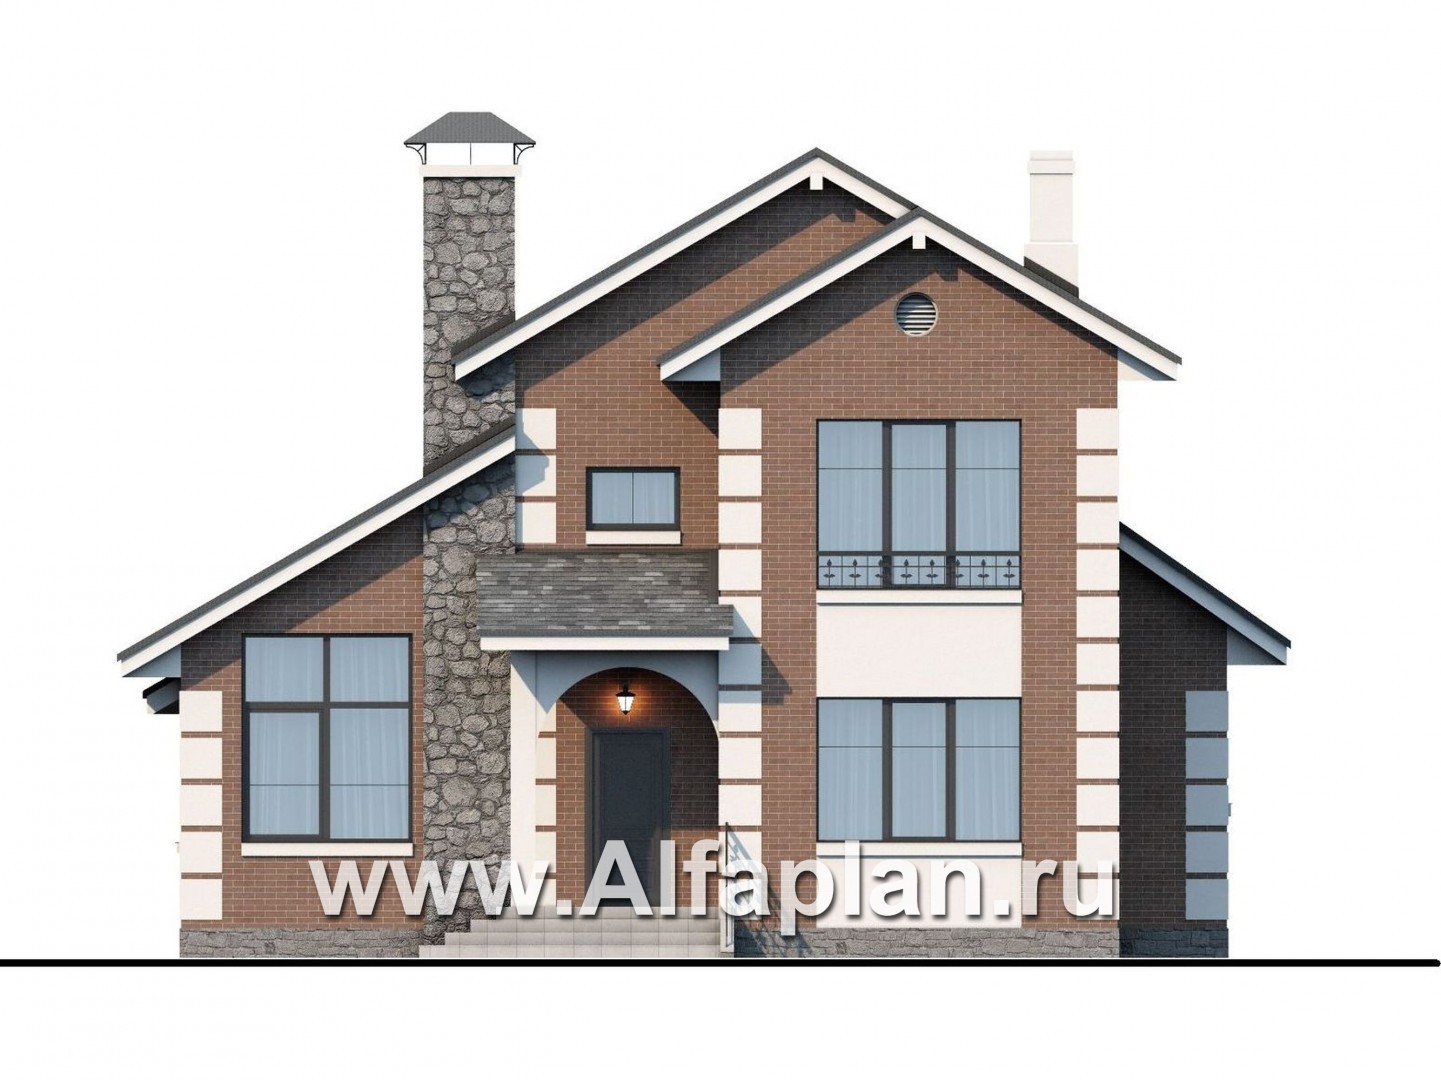 Проекты домов Альфаплан - Кирпичный дом «Прагма» для небольшой семьи - изображение фасада №1